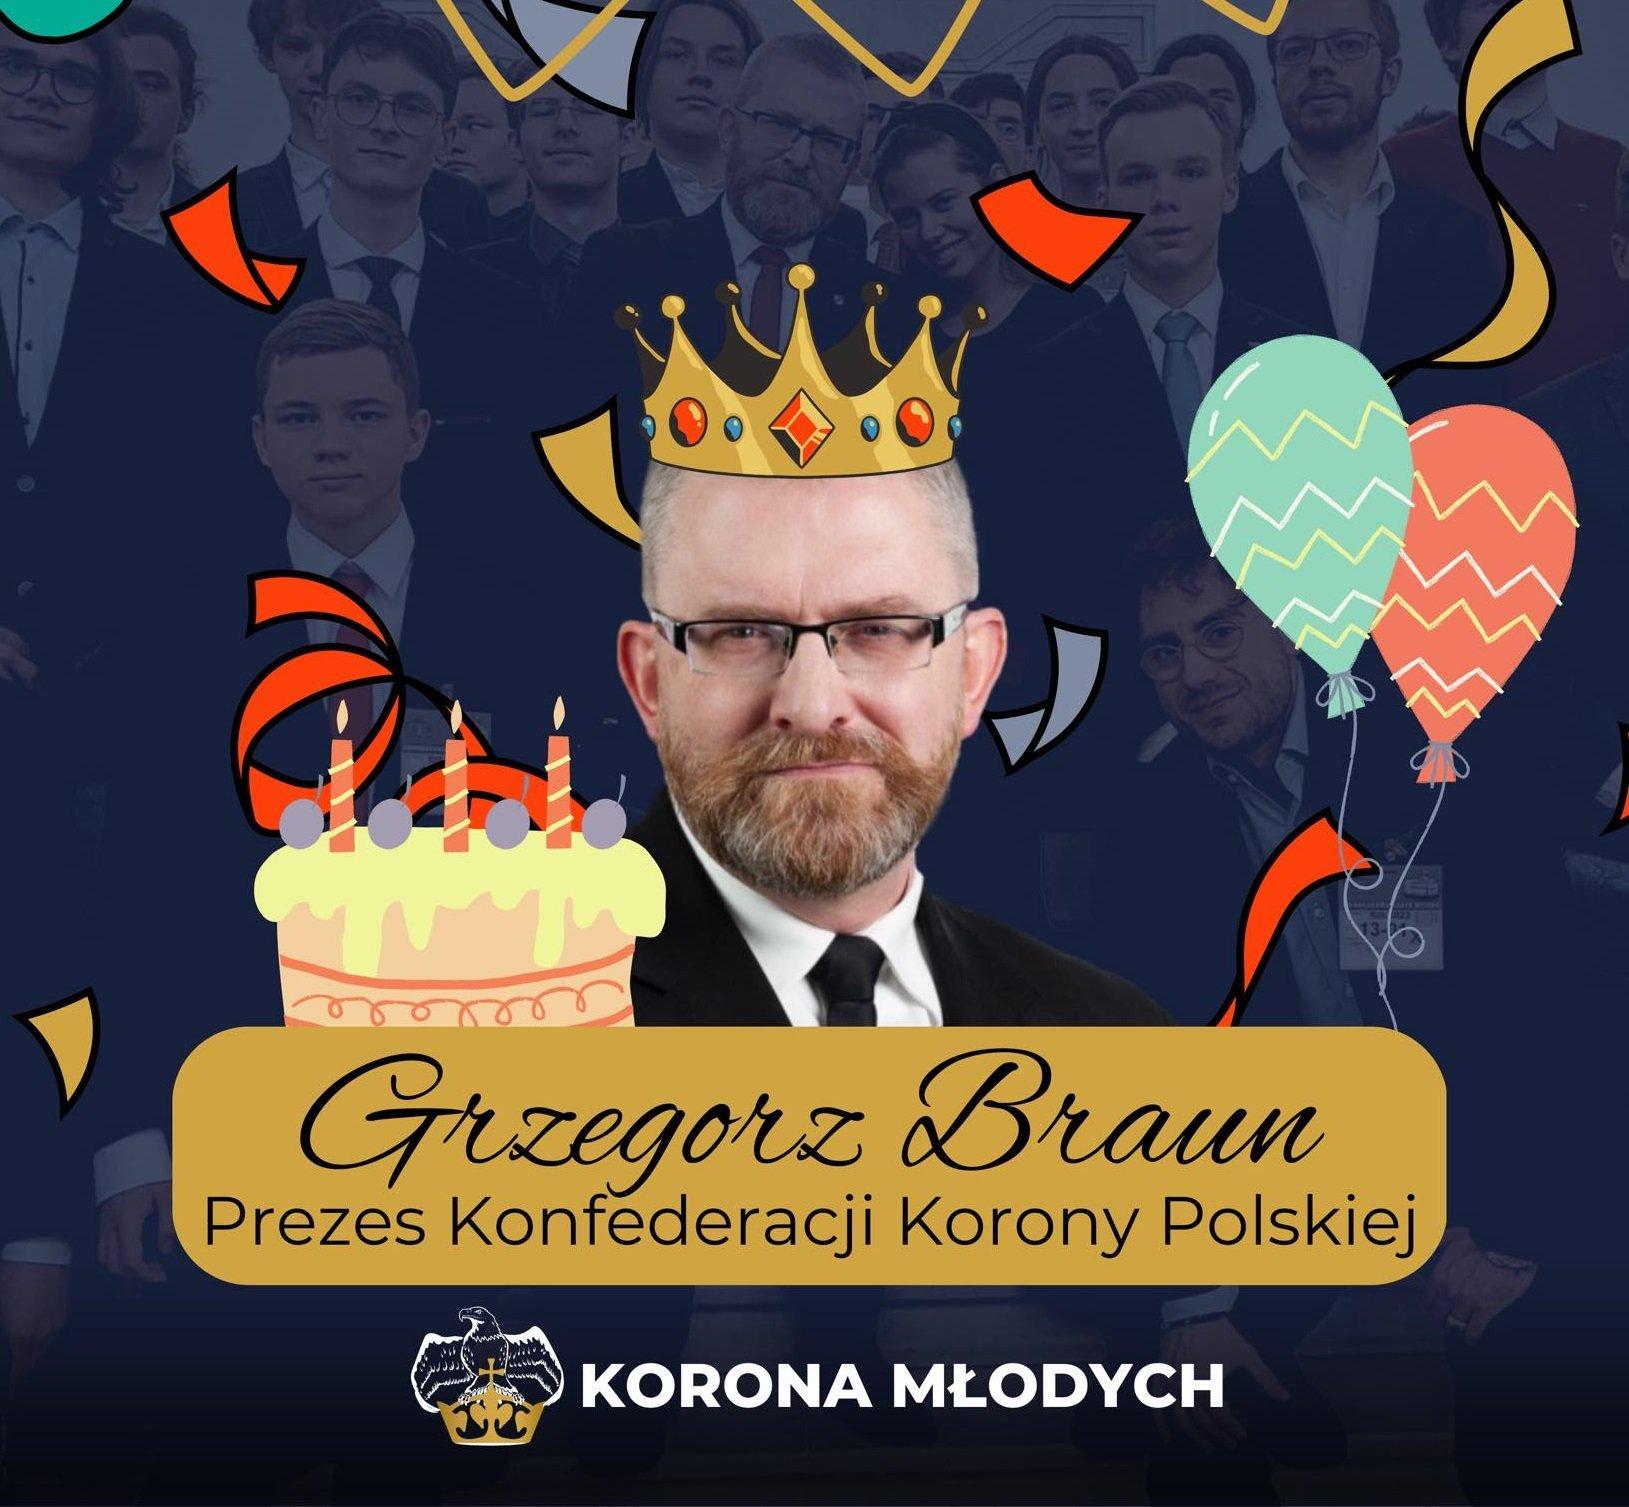 Kolaż przedstawiający Grzegorza Brauna (z brodą, w okularach) w koronie na tle świątecznych baloników i konfetti. Podpis głosi: „Korona Młodych"